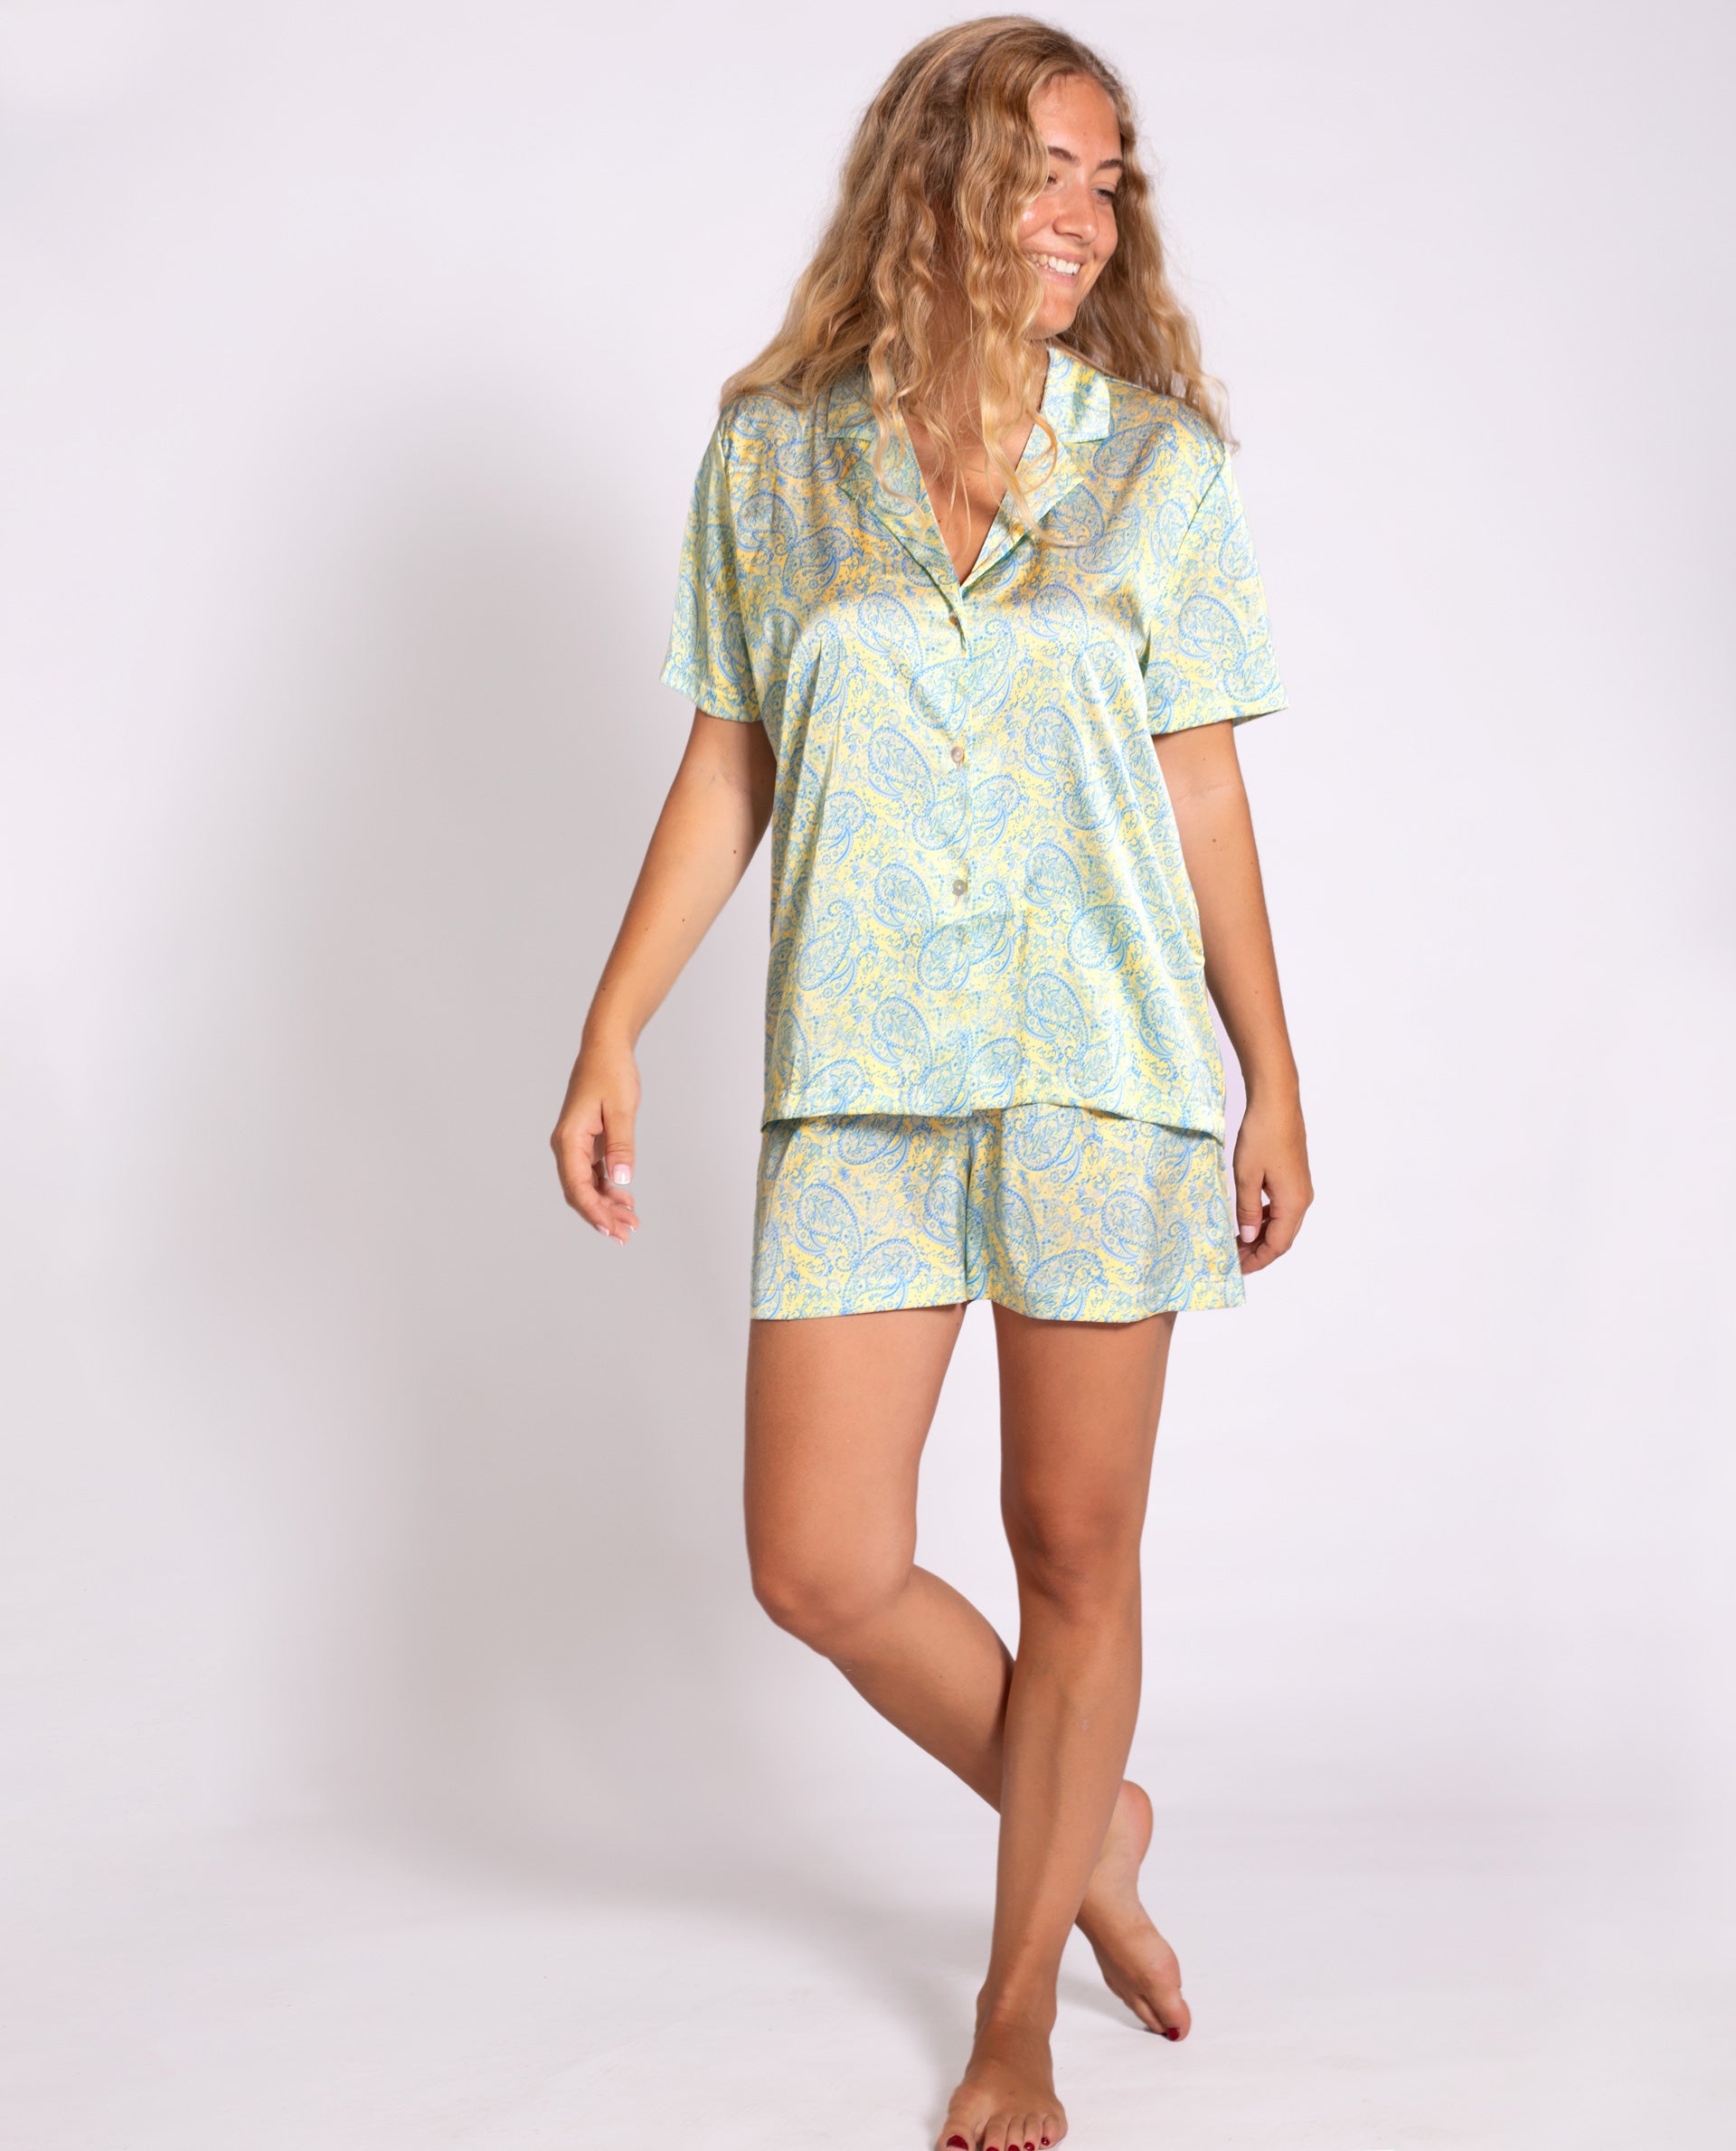 PIJAMA YELLOW DISORDER | Camisa Corta Pijama Mujer Print Paisley | THE-ARE x @mariafrubies